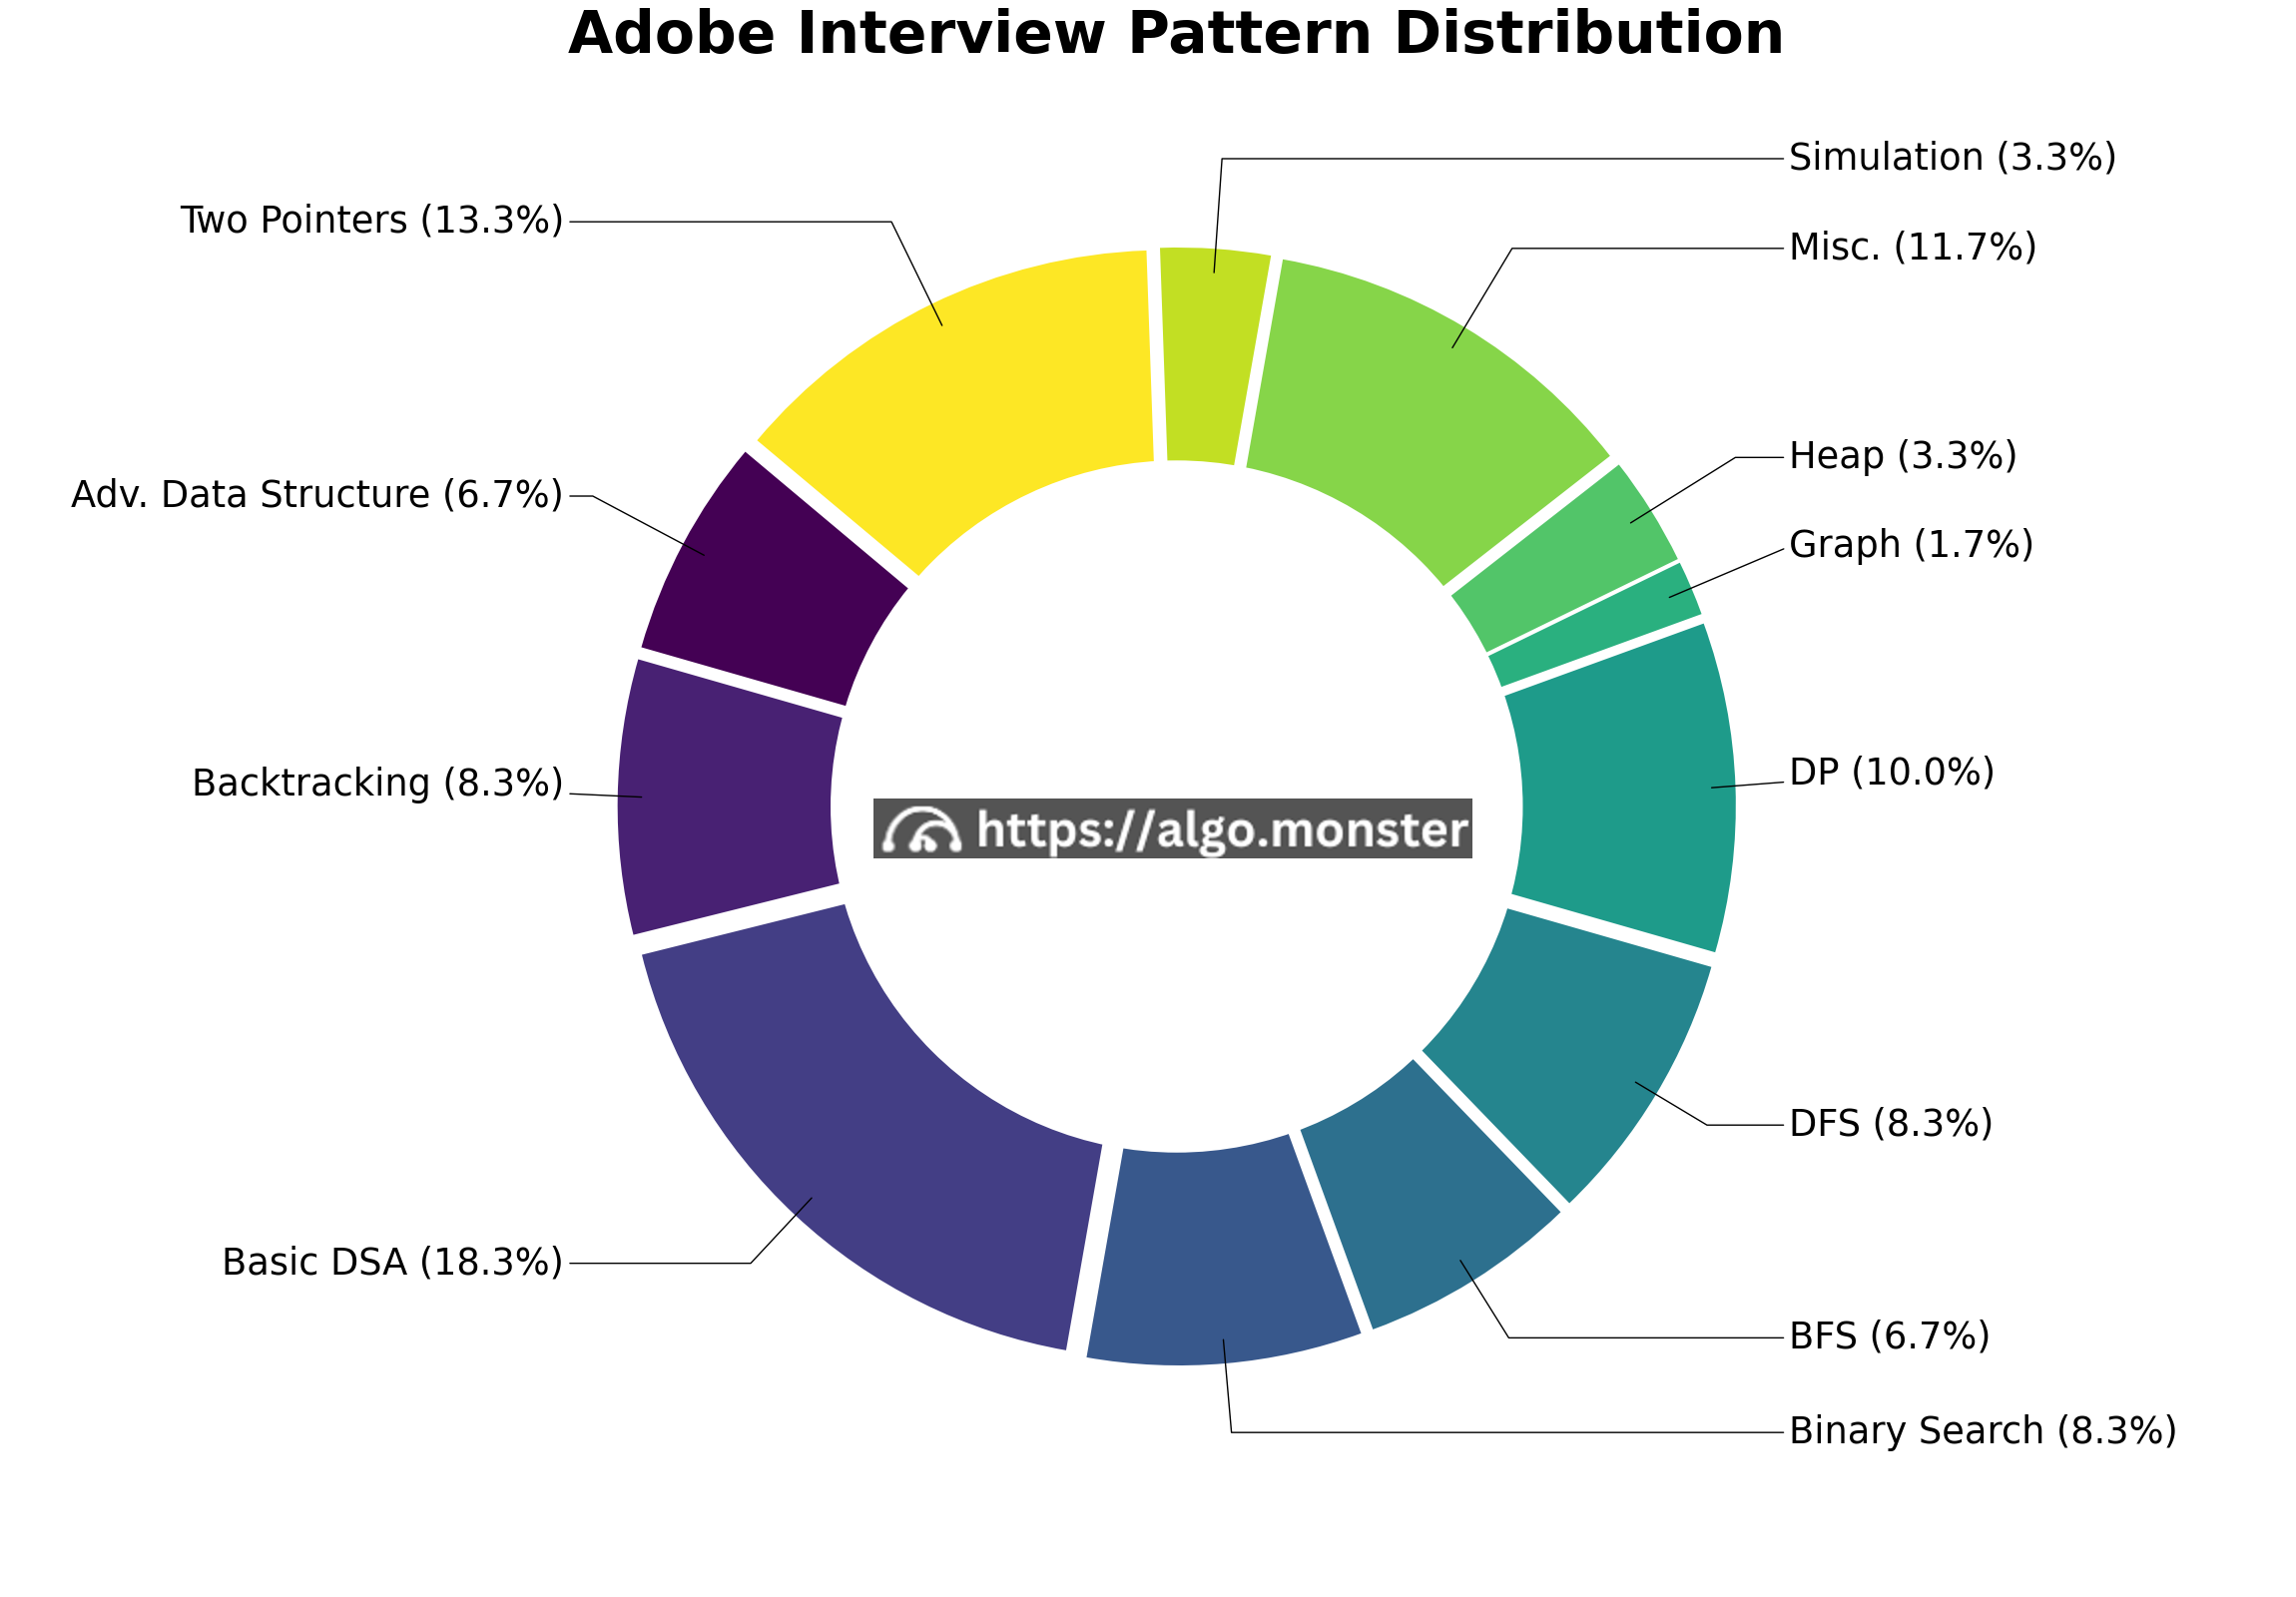 Adobe interview questions breakdown